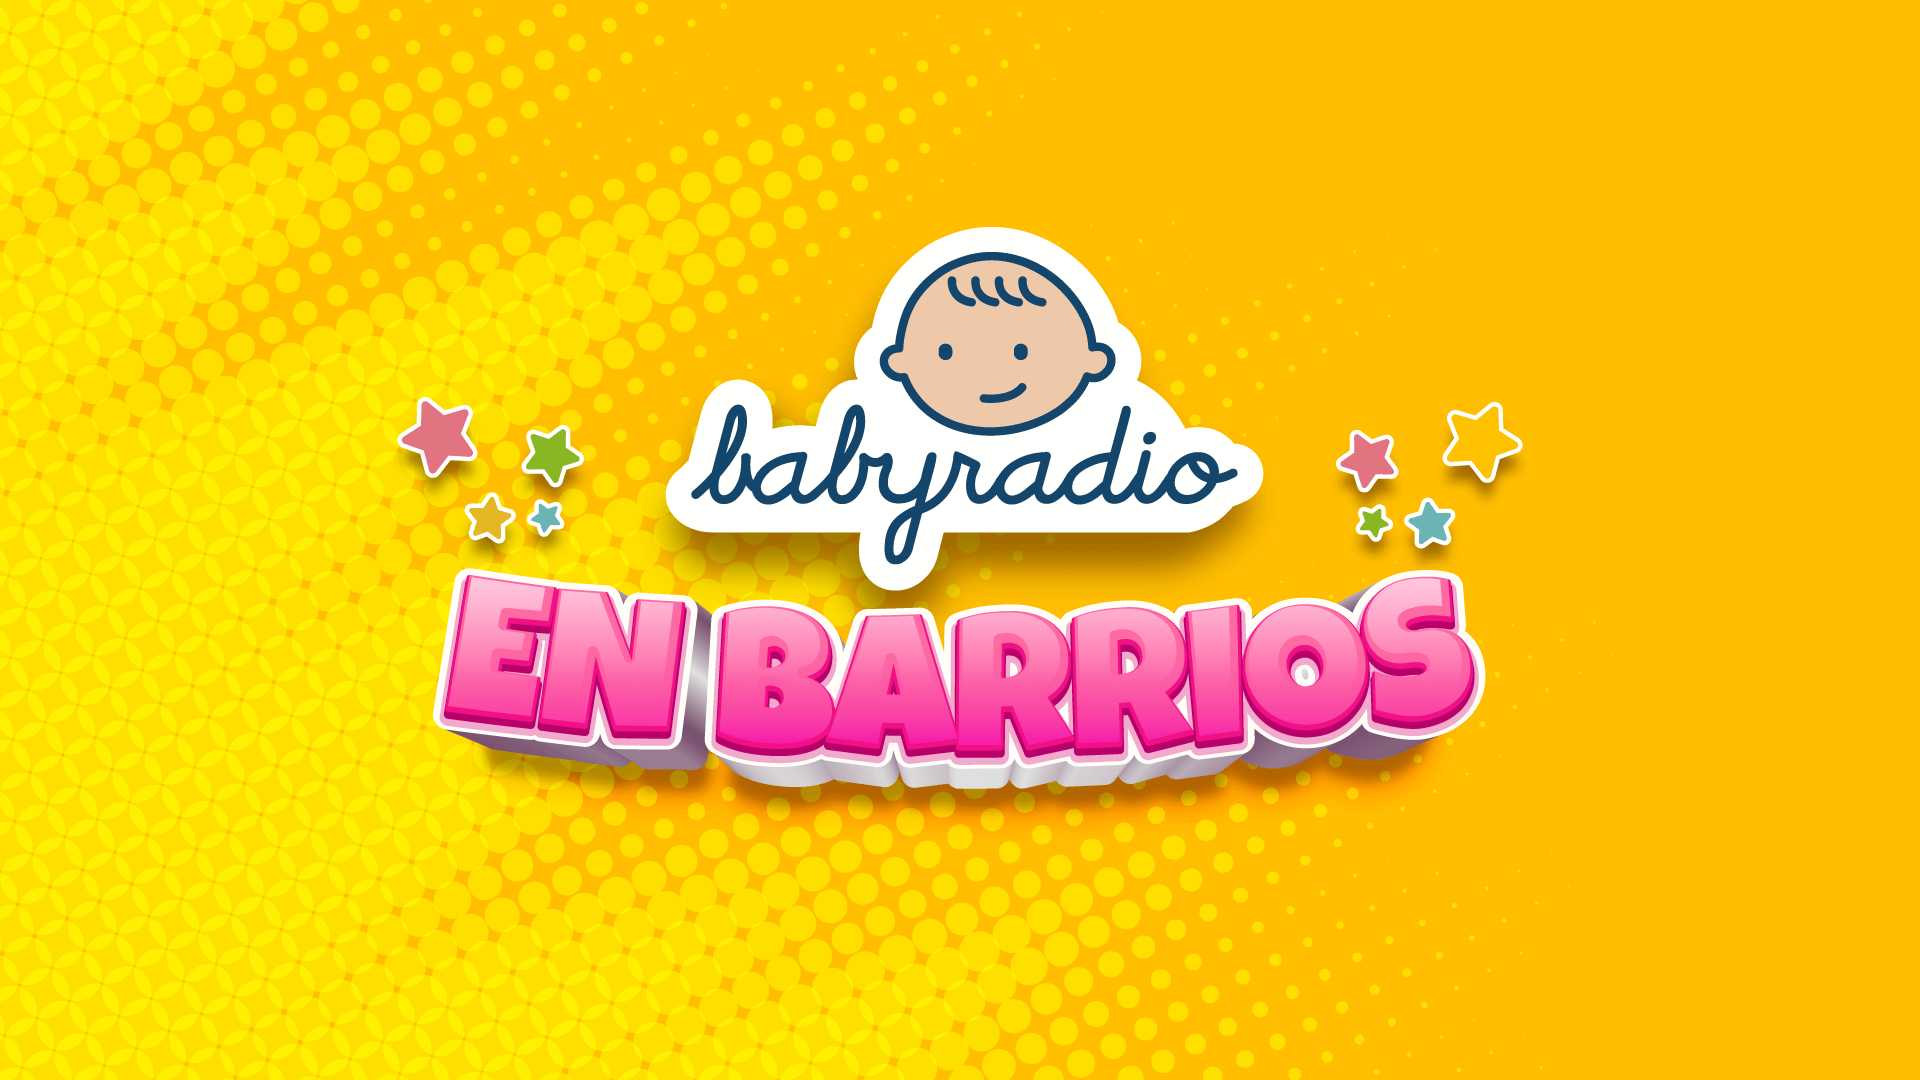 Babyradio en Barrios